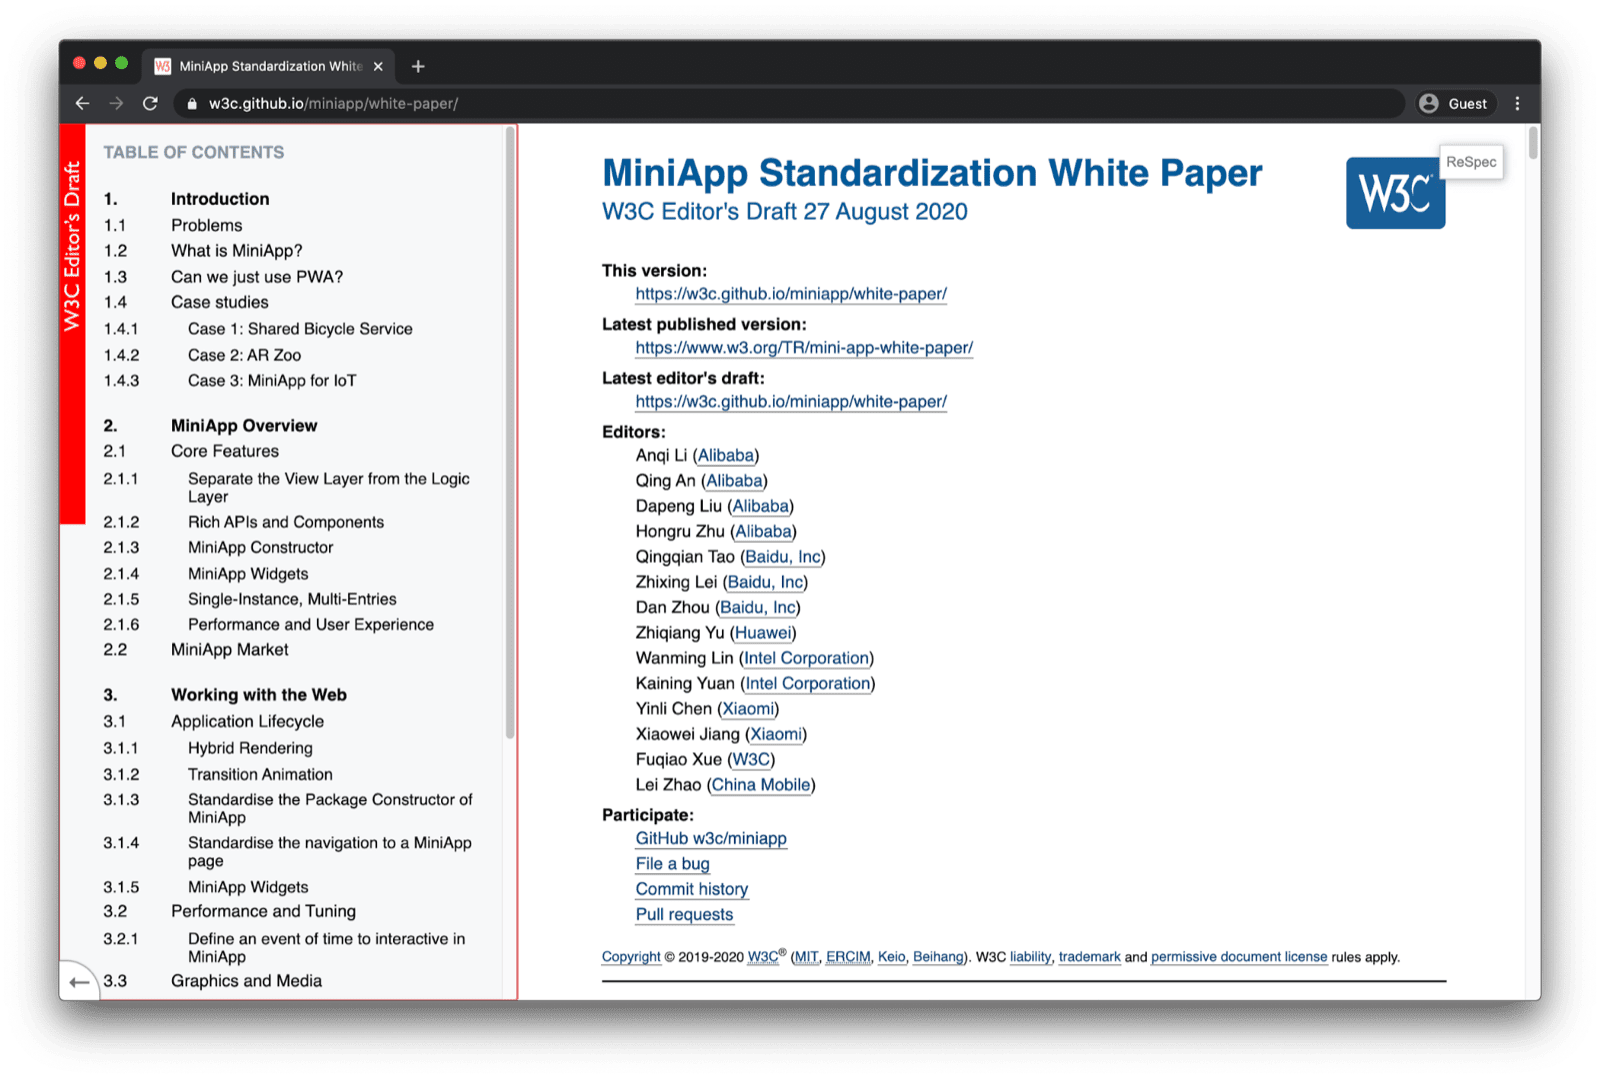 Заголовок технического документа по стандартизации мини-приложений в окне браузера.